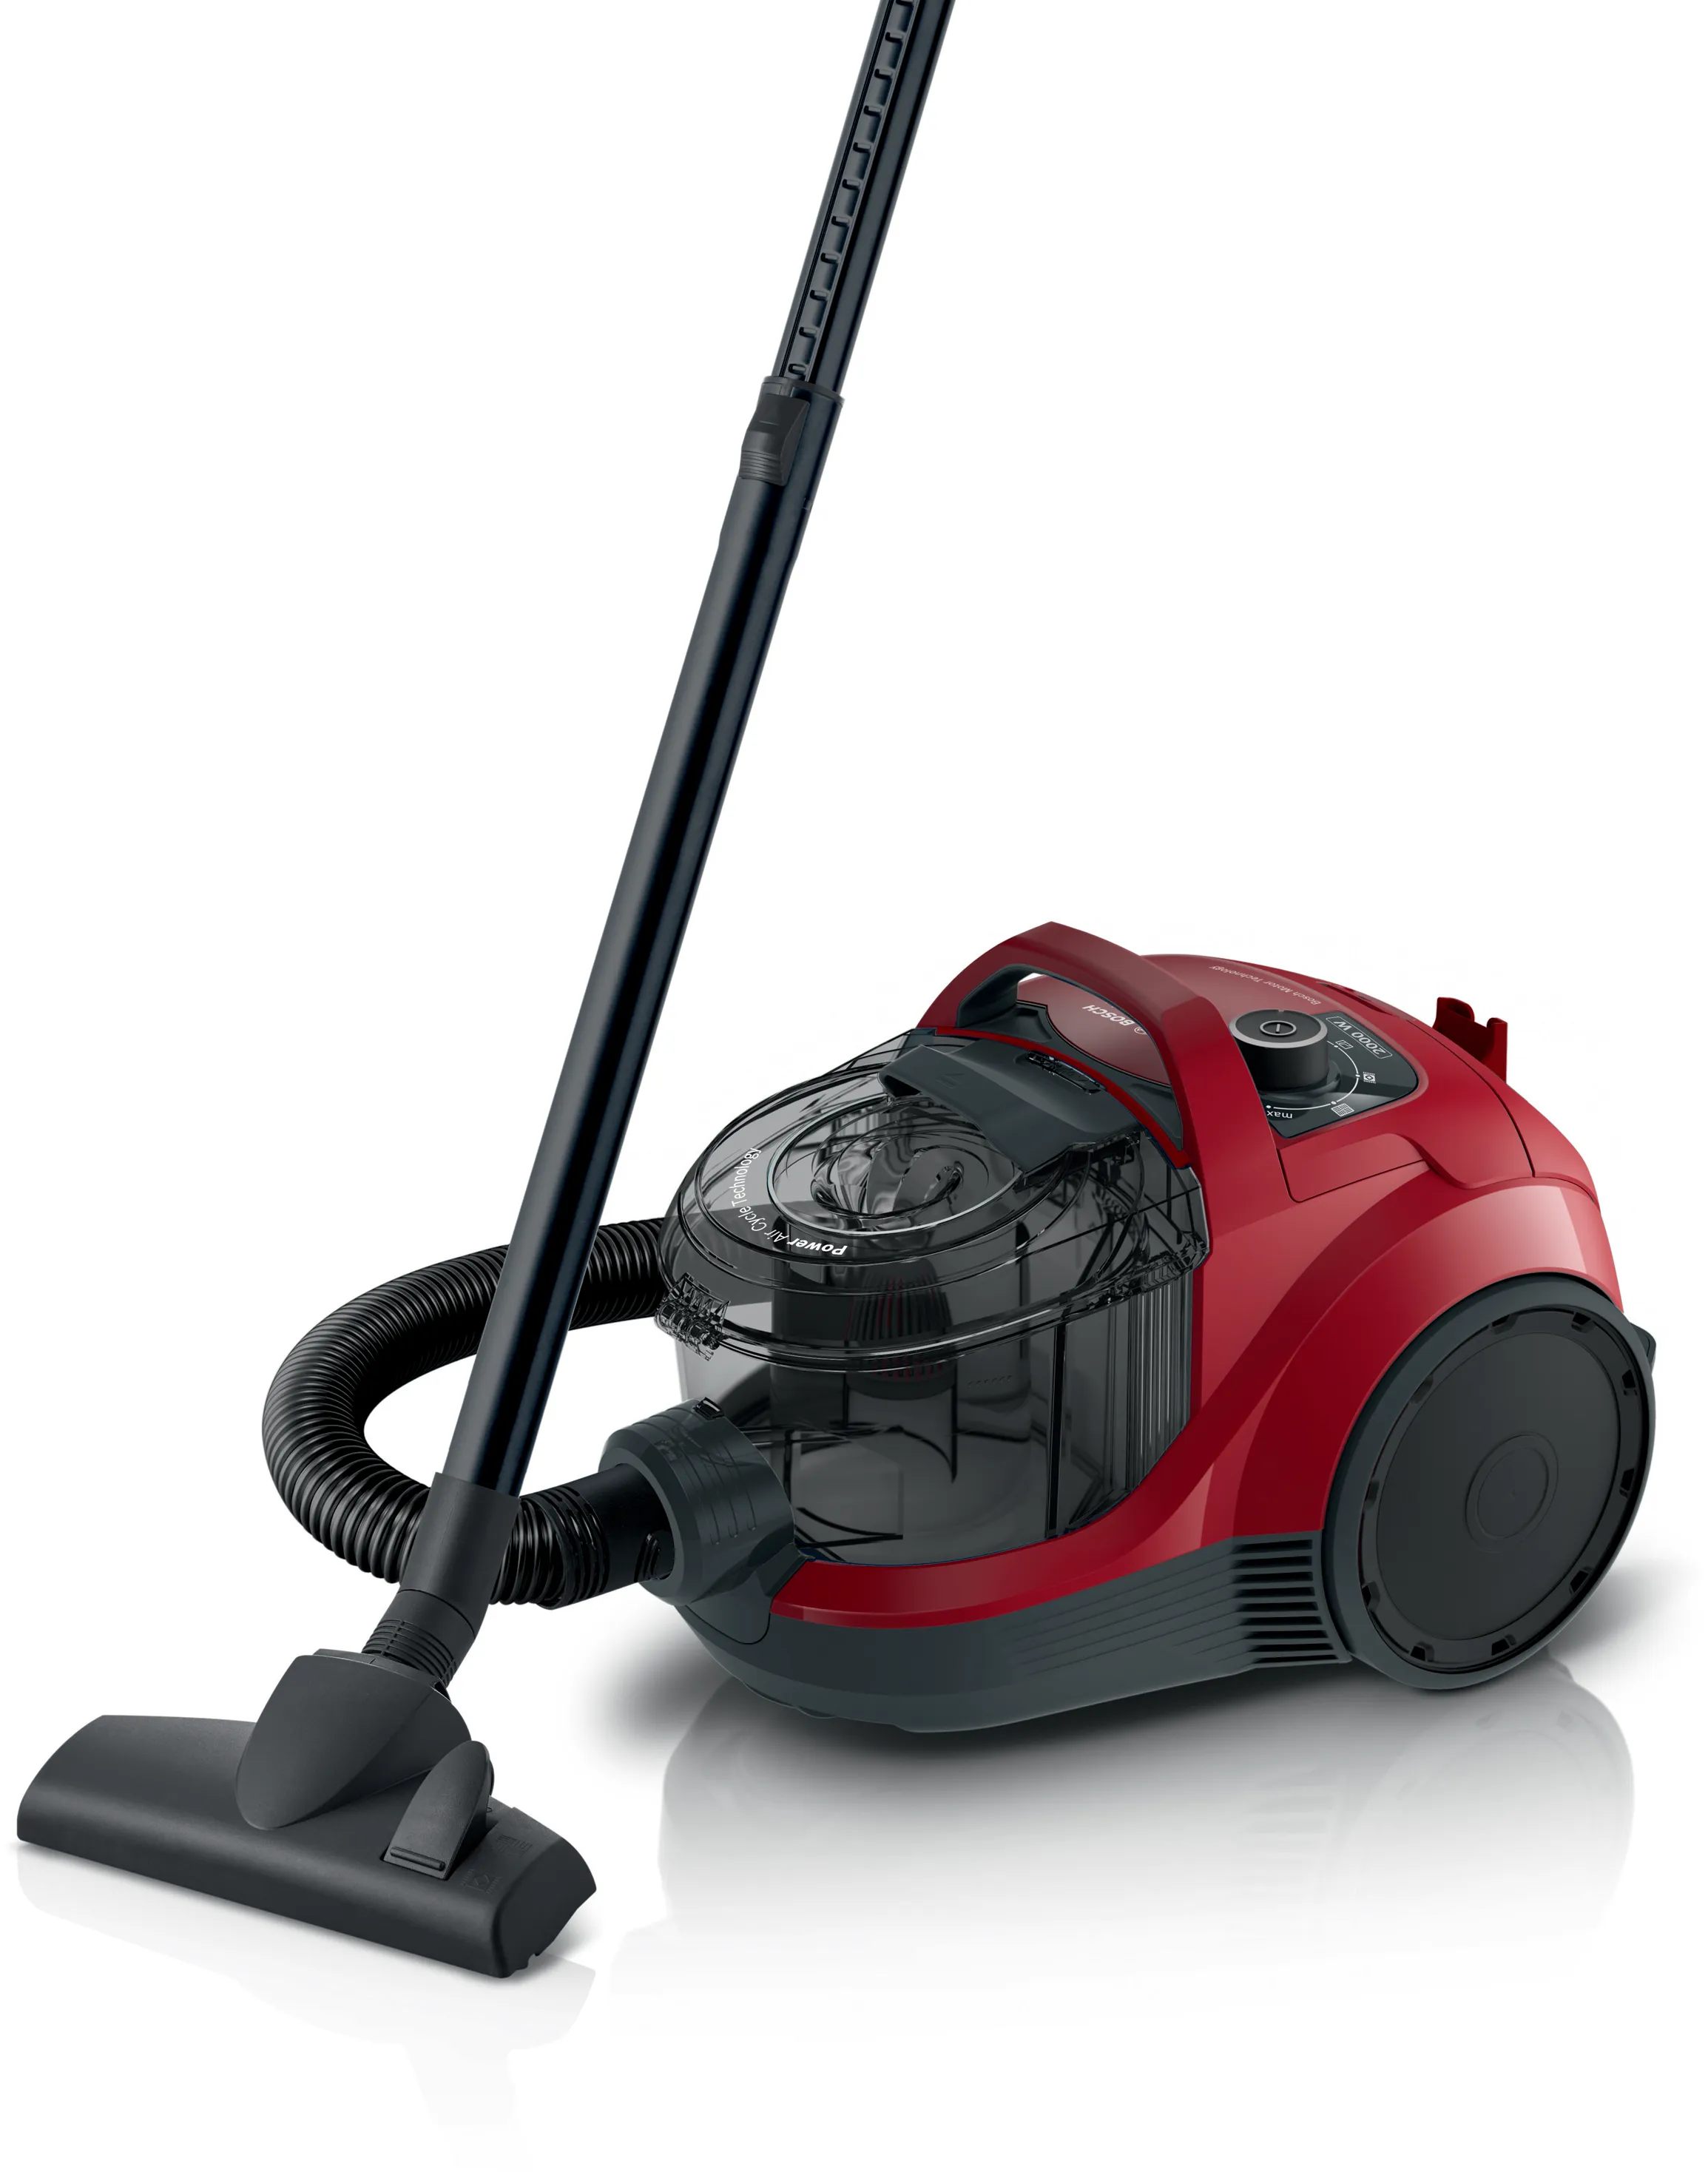 ซีรี่ 4 Bagless vacuum cleaner สีแดง 